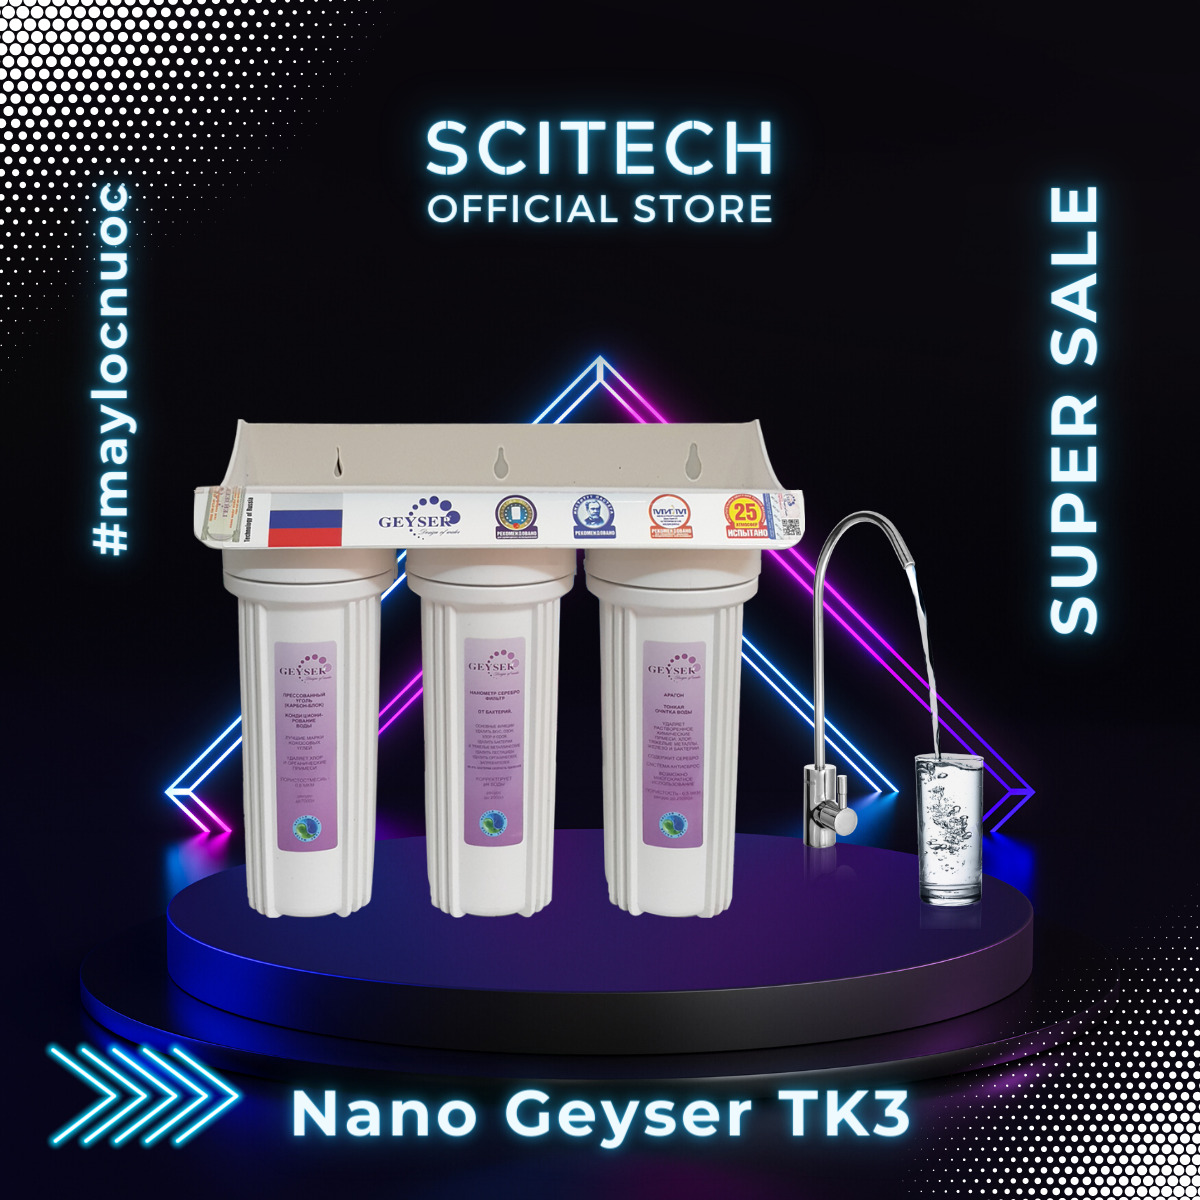 Máy lọc nước Nano Geyser Tk3